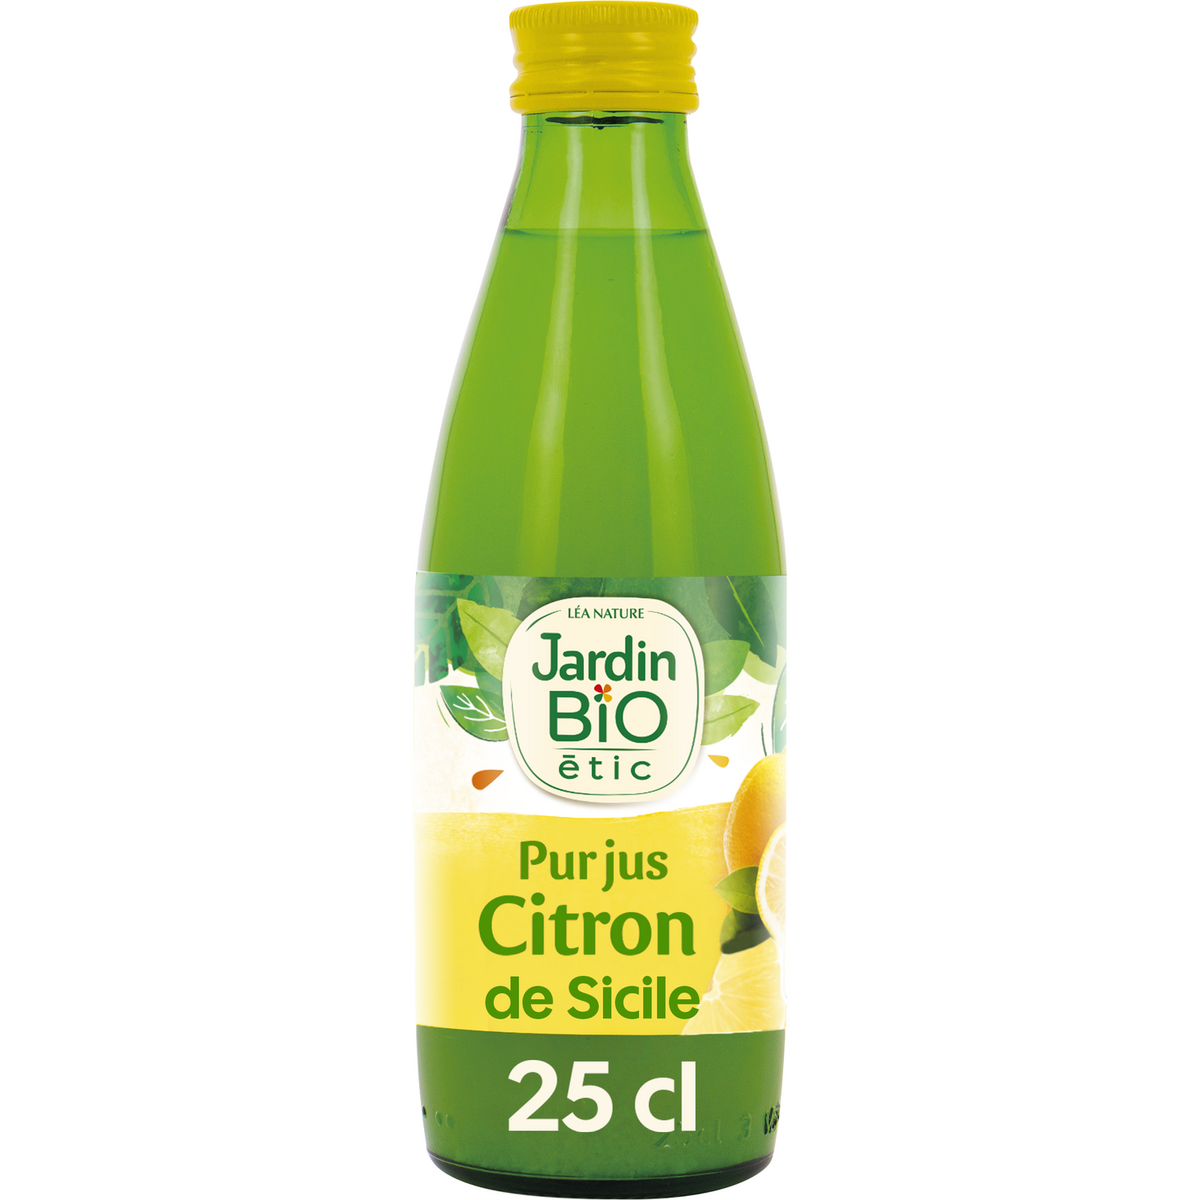 JARDIN BIO ETIC Pur jus de citron origine Sicile en bouteille 25cl